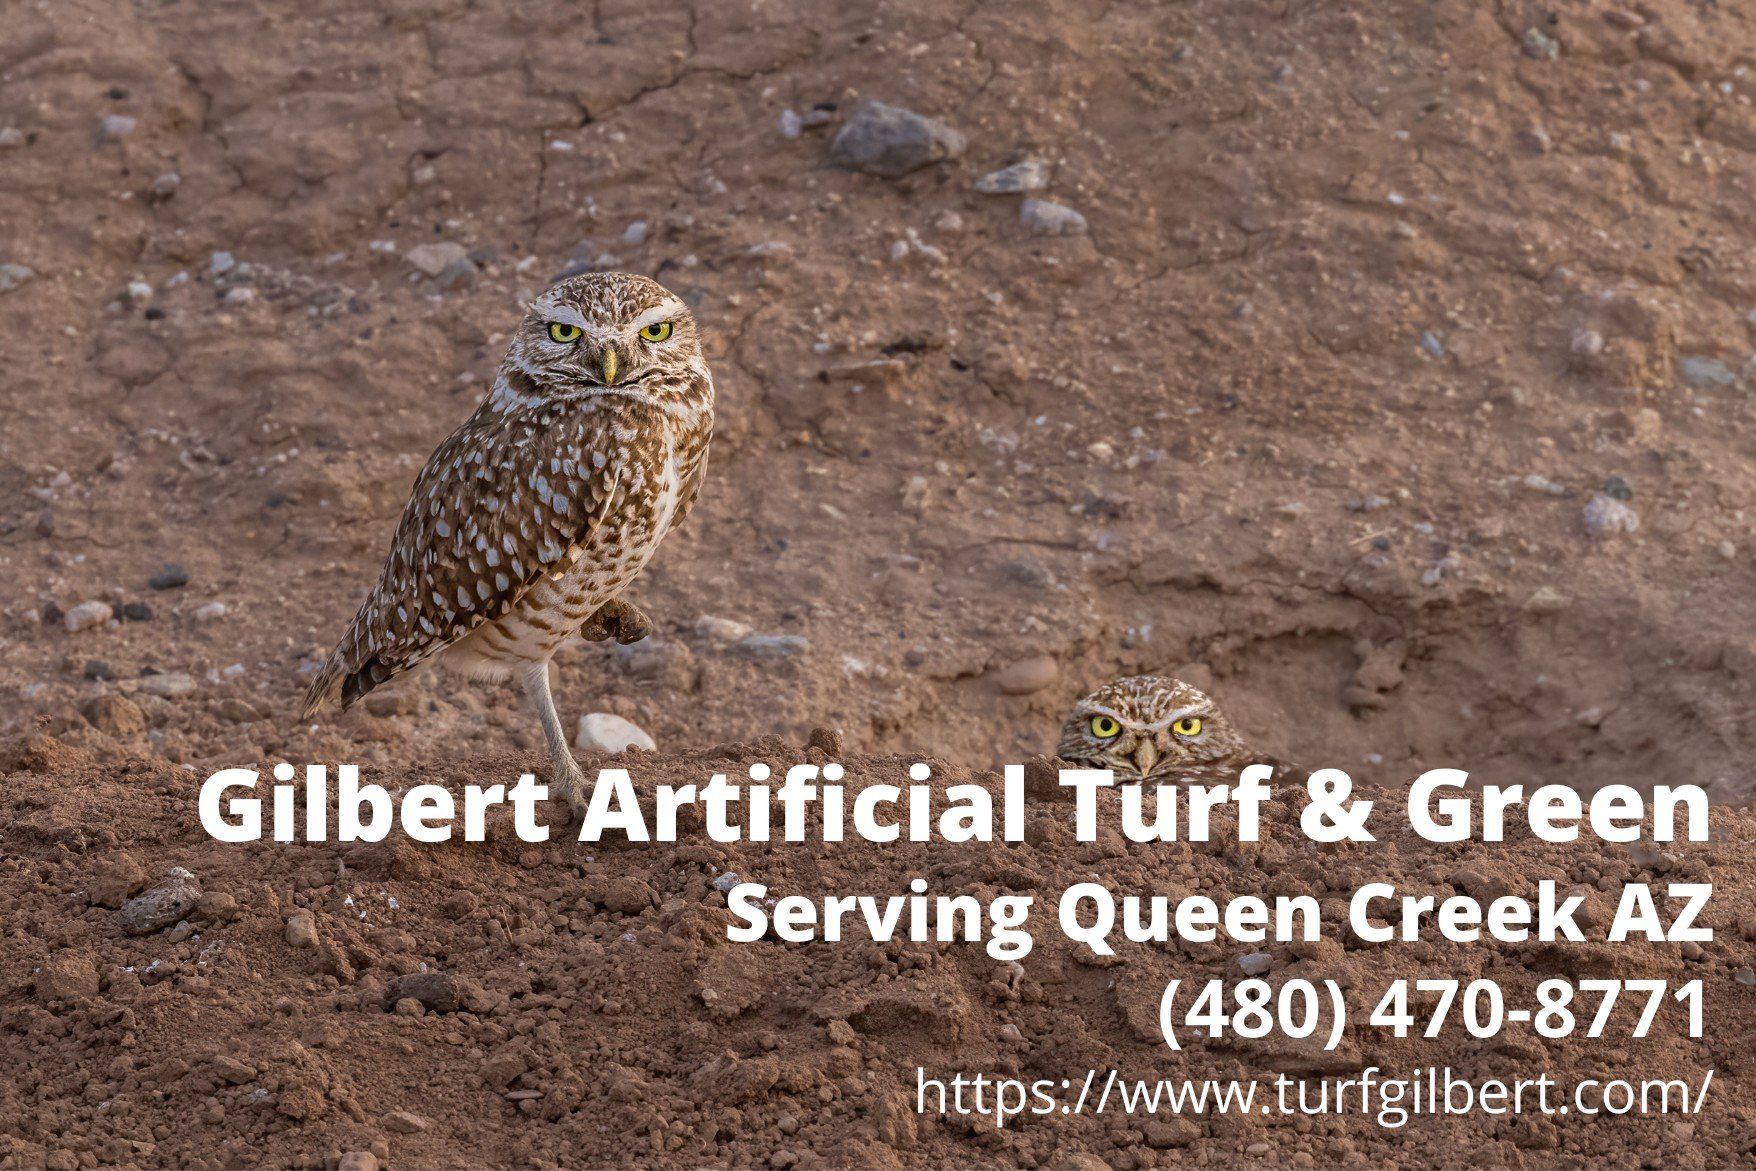 contact details of Gilbert Artificial Turf & Green - an artificial turf installer in Queen Creek, AZ